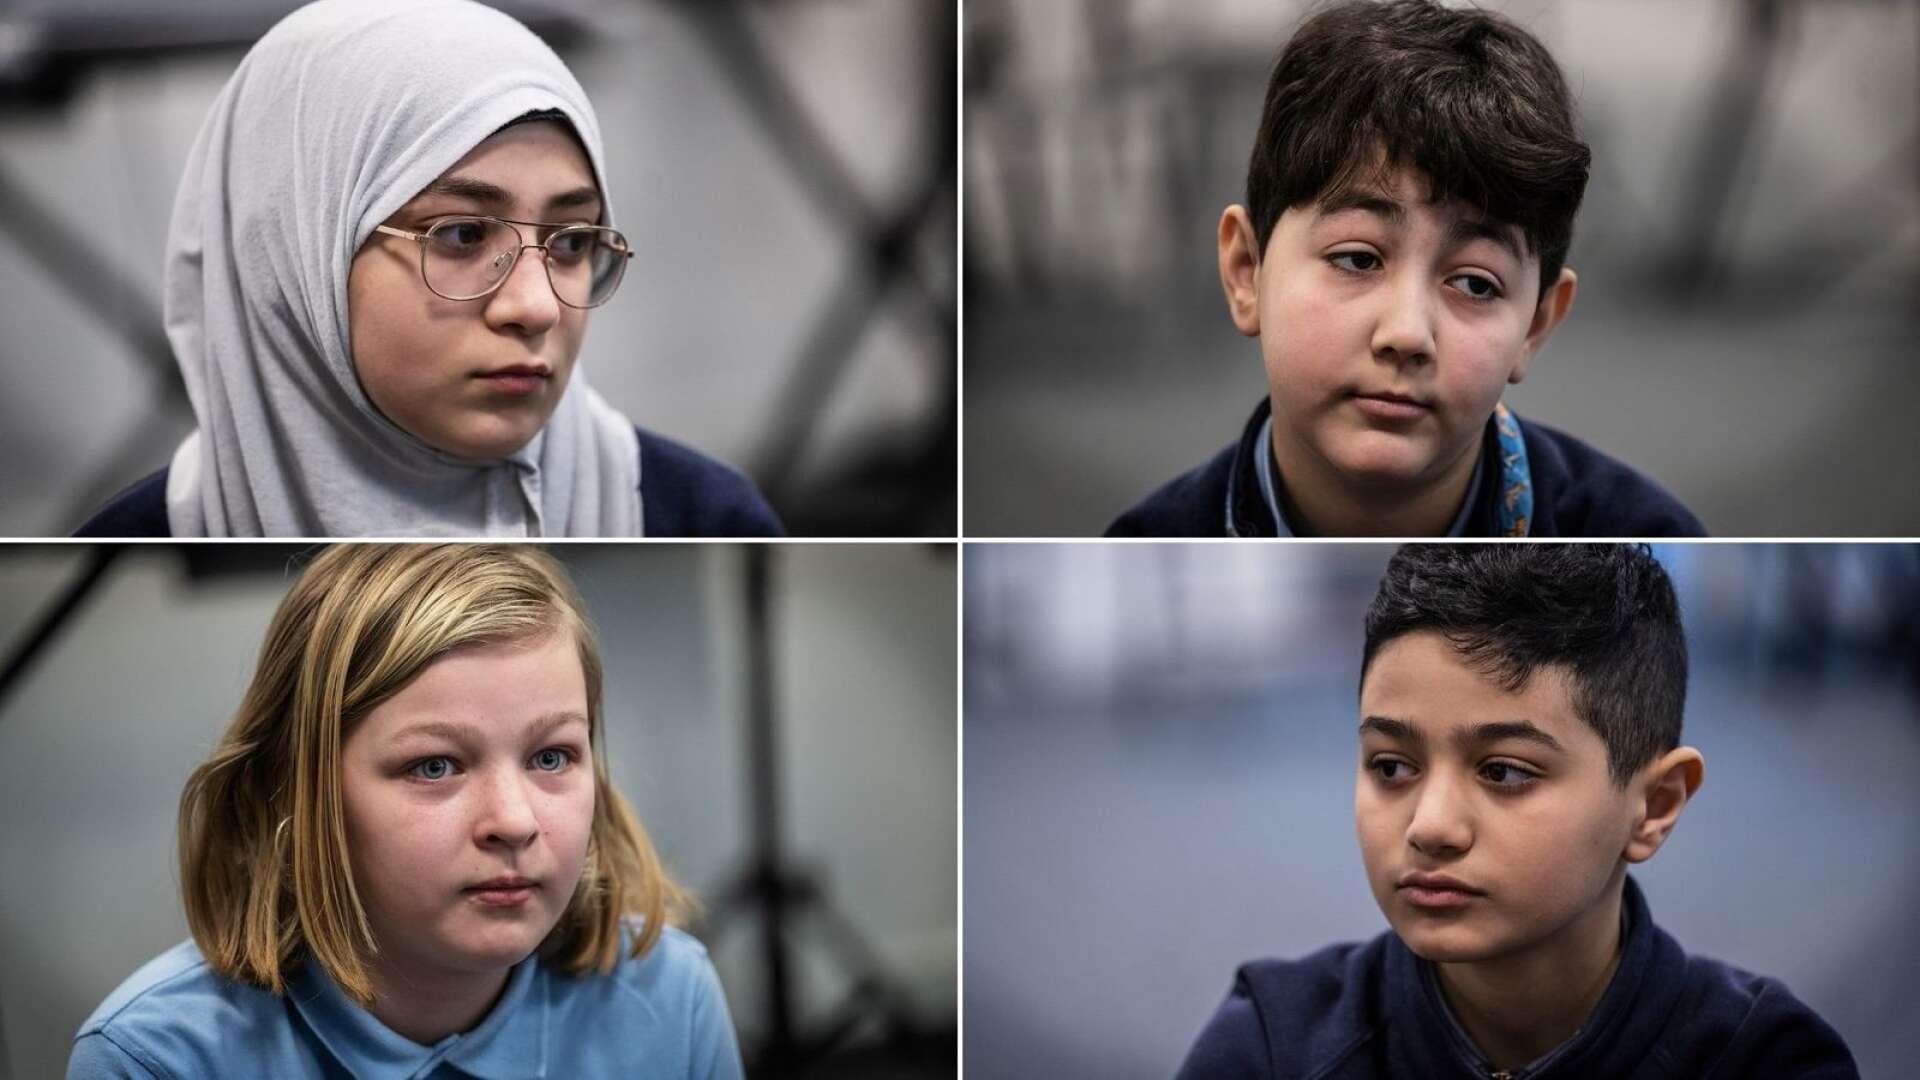 Arjen, 10, besviken över att Sverige inte har hjälpt andra länder: ”Barn är ju barn överallt – människor är människor”